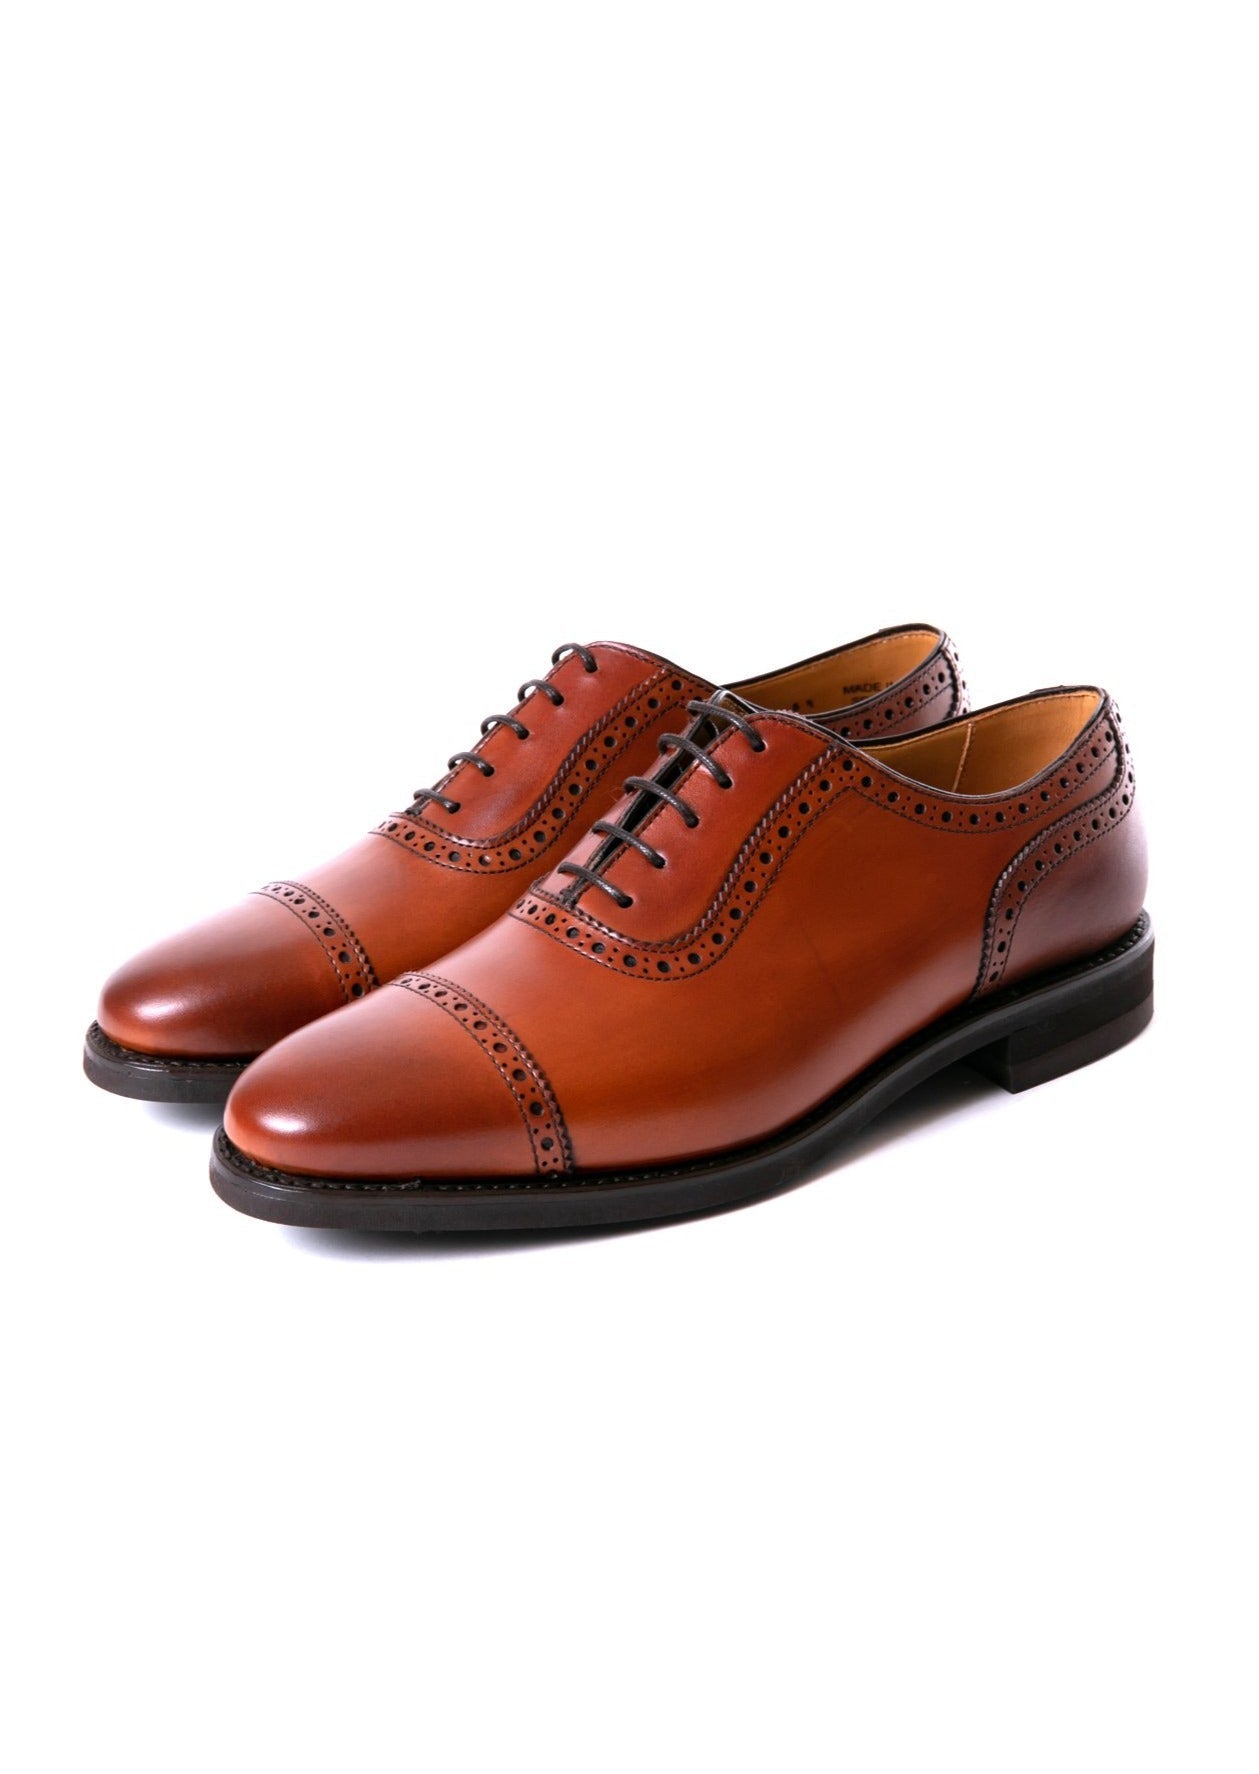 新品barker フルブローグオックスフォードシューズ ウィングチップ 革靴